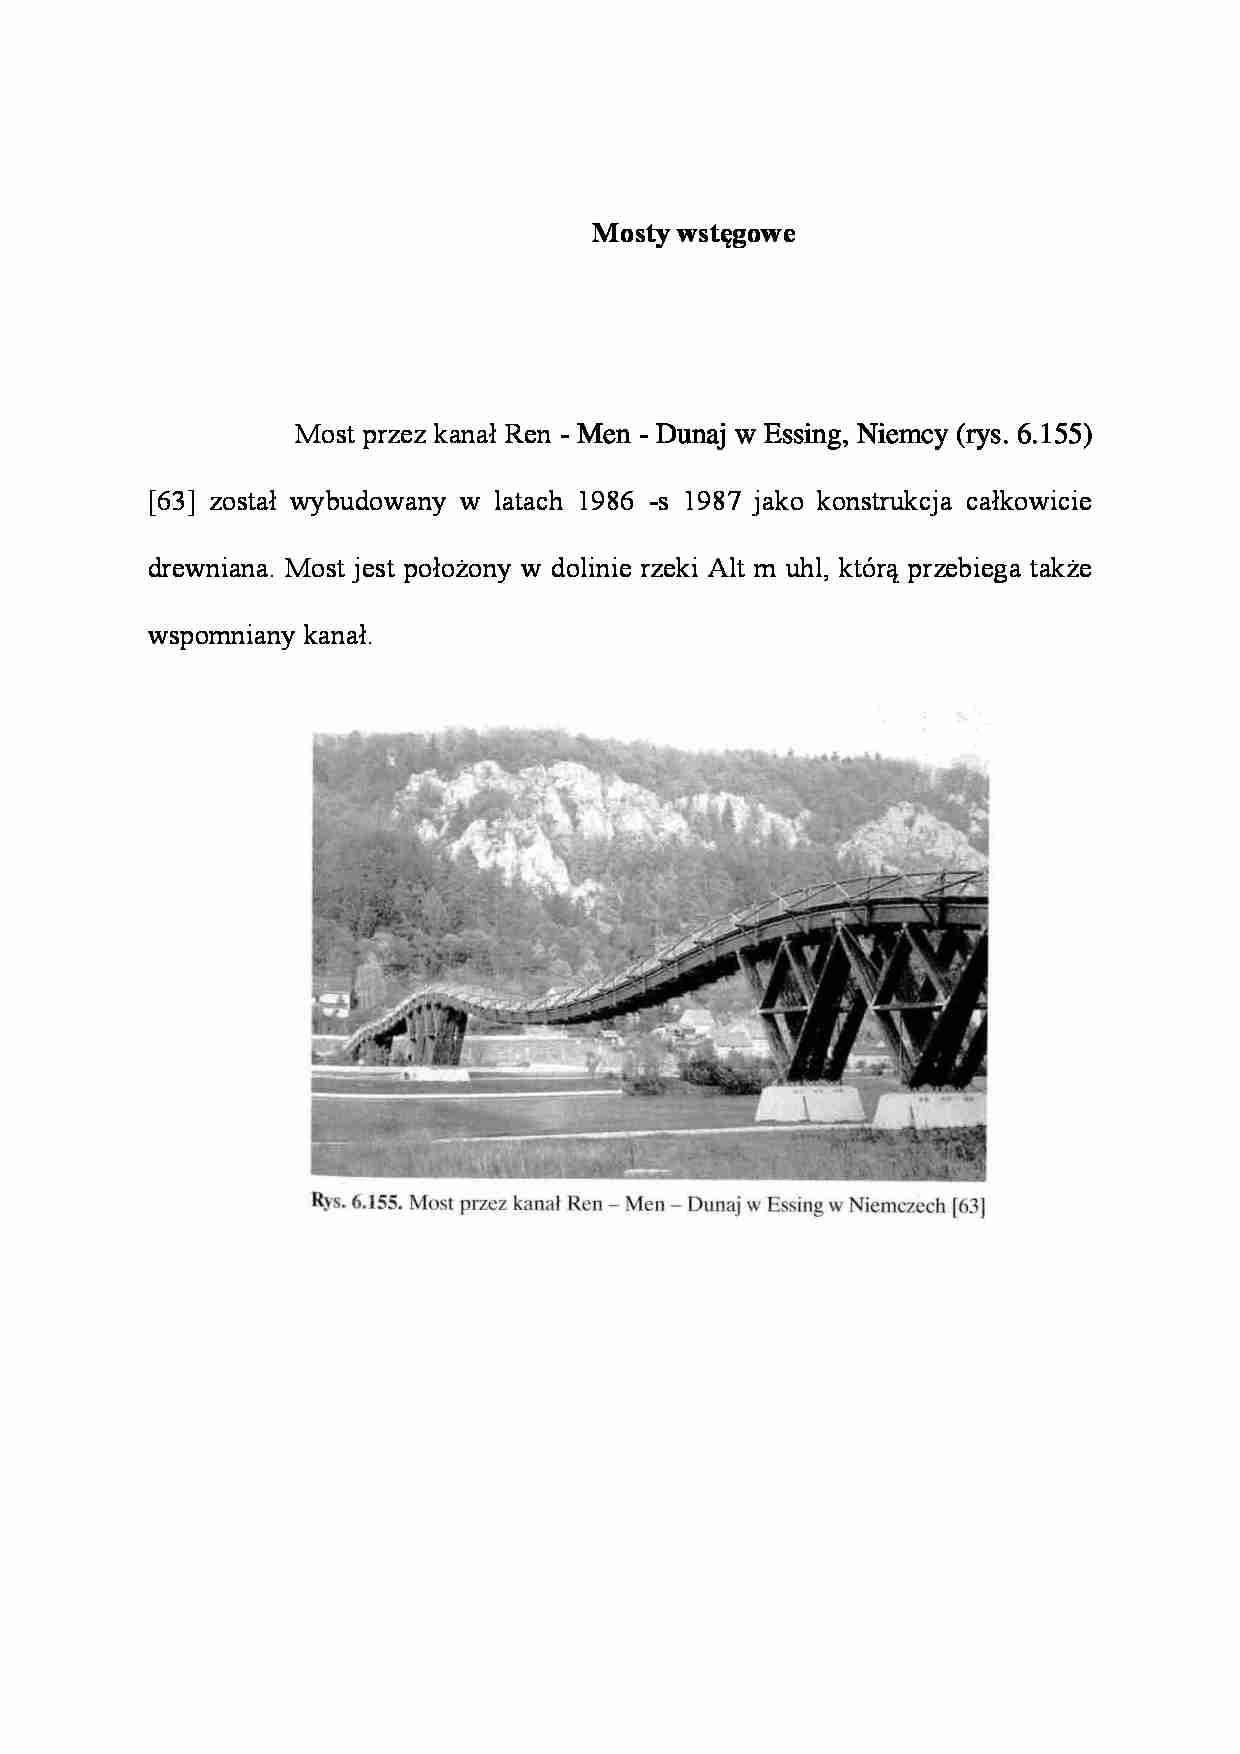 Mosty wstęgowe - wykład - strona 1